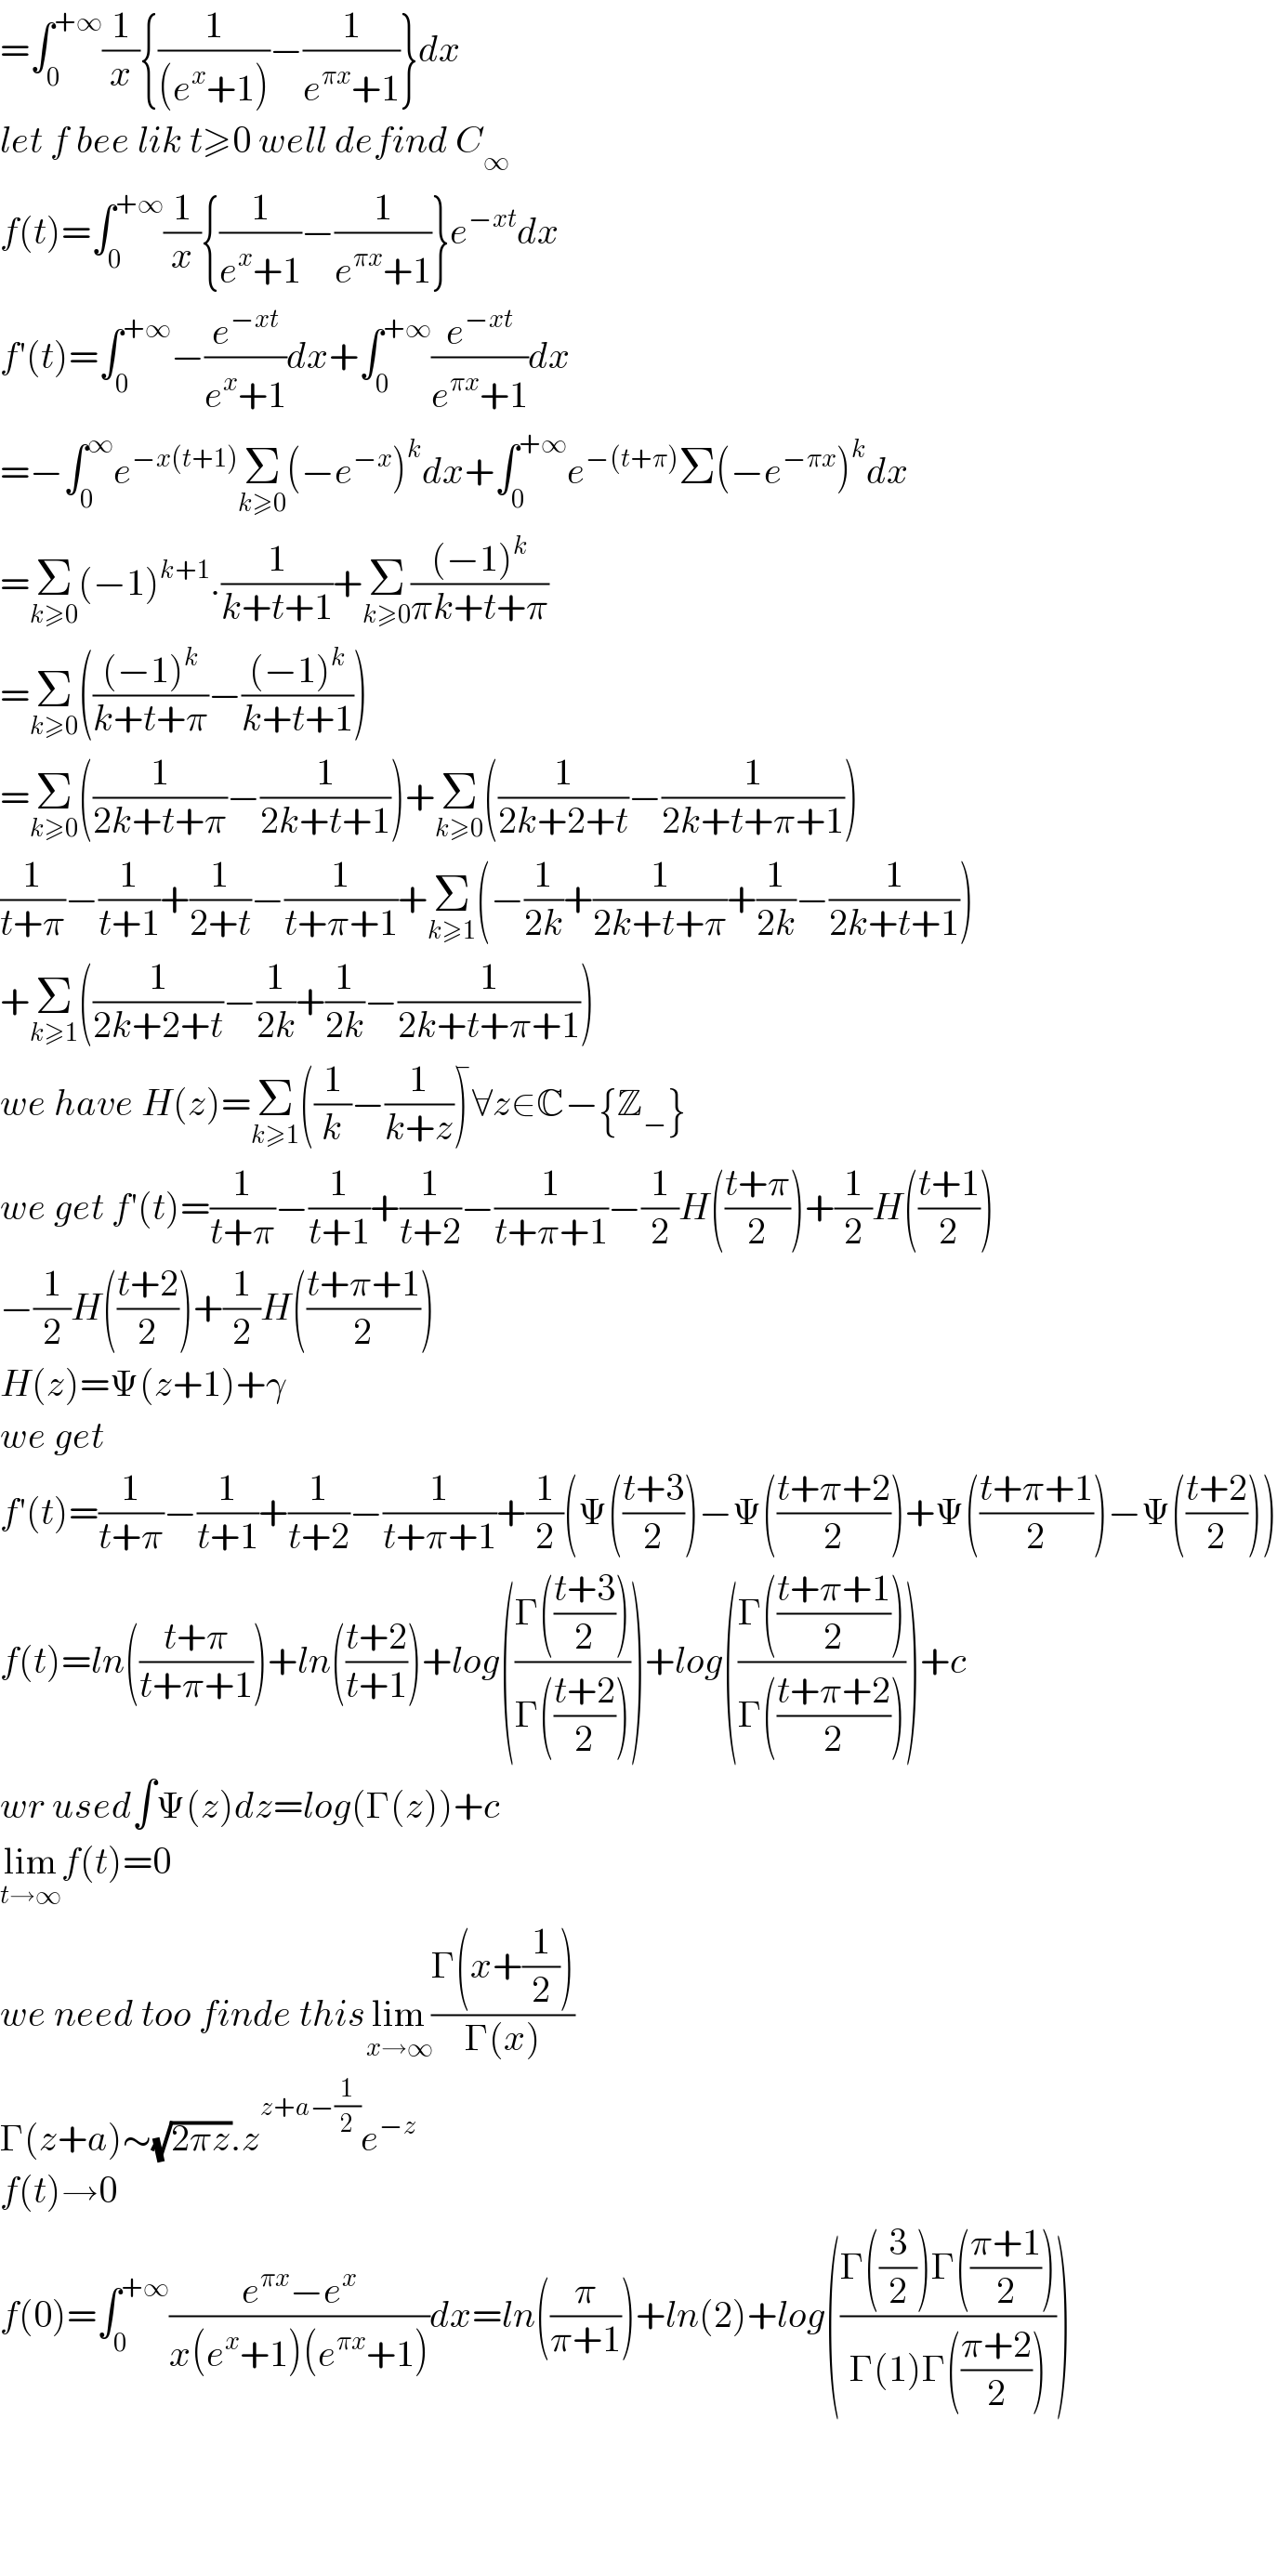 =∫_0 ^(+∞) (1/x){(1/((e^x +1)))−(1/(e^(πx) +1))}dx  let f bee lik t≥0 well defind C_∞   f(t)=∫_0 ^(+∞) (1/x){(1/(e^x +1))−(1/(e^(πx) +1))}e^(−xt) dx  f′(t)=∫_0 ^(+∞) −(e^(−xt) /(e^x +1))dx+∫_0 ^(+∞) (e^(−xt) /(e^(πx) +1))dx  =−∫_0 ^∞ e^(−x(t+1)) Σ_(k≥0) (−e^(−x) )^k dx+∫_0 ^(+∞) e^(−(t+π)) Σ(−e^(−πx) )^k dx  =Σ_(k≥0) (−1)^(k+1) .(1/(k+t+1))+Σ_(k≥0) (((−1)^k )/(πk+t+π))  =Σ_(k≥0) ((((−1)^k )/(k+t+π))−(((−1)^k )/(k+t+1)))  =Σ_(k≥0) ((1/(2k+t+π))−(1/(2k+t+1)))+Σ_(k≥0) ((1/(2k+2+t))−(1/(2k+t+π+1)))  (1/(t+π))−(1/(t+1))+(1/(2+t))−(1/(t+π+1))+Σ_(k≥1) (−(1/(2k))+(1/(2k+t+π))+(1/(2k))−(1/(2k+t+1)))  +Σ_(k≥1) ((1/(2k+2+t))−(1/(2k))+(1/(2k))−(1/(2k+t+π+1)))  we have H(z)=Σ_(k≥1) ((1/k)−(1/(k+z)))^� ∀z∈C−{Z_− }  we get f′(t)=(1/(t+π))−(1/(t+1))+(1/(t+2))−(1/(t+π+1))−(1/2)H(((t+π)/2))+(1/2)H(((t+1)/2))  −(1/2)H(((t+2)/2))+(1/2)H(((t+π+1)/2))  H(z)=Ψ(z+1)+γ  we get  f′(t)=(1/(t+π))−(1/(t+1))+(1/(t+2))−(1/(t+π+1))+(1/2)(Ψ(((t+3)/2))−Ψ(((t+π+2)/2))+Ψ(((t+π+1)/2))−Ψ(((t+2)/2)))  f(t)=ln(((t+π)/(t+π+1)))+ln(((t+2)/(t+1)))+log(((Γ(((t+3)/2)))/(Γ(((t+2)/2)))))+log(((Γ(((t+π+1)/2)))/(Γ(((t+π+2)/2)))))+c  wr used∫Ψ(z)dz=log(Γ(z))+c  lim_(t→∞) f(t)=0  we need too finde thislim_(x→∞) ((Γ(x+(1/2)))/(Γ(x)))  Γ(z+a)∼(√(2πz)).z^(z+a−(1/2)) e^(−z)   f(t)→0  f(0)=∫_0 ^(+∞) ((e^(πx) −e^x )/(x(e^x +1)(e^(πx) +1)))dx=ln((π/(π+1)))+ln(2)+log(((Γ((3/2))Γ(((π+1)/2)))/(Γ(1)Γ(((π+2)/2)))))        